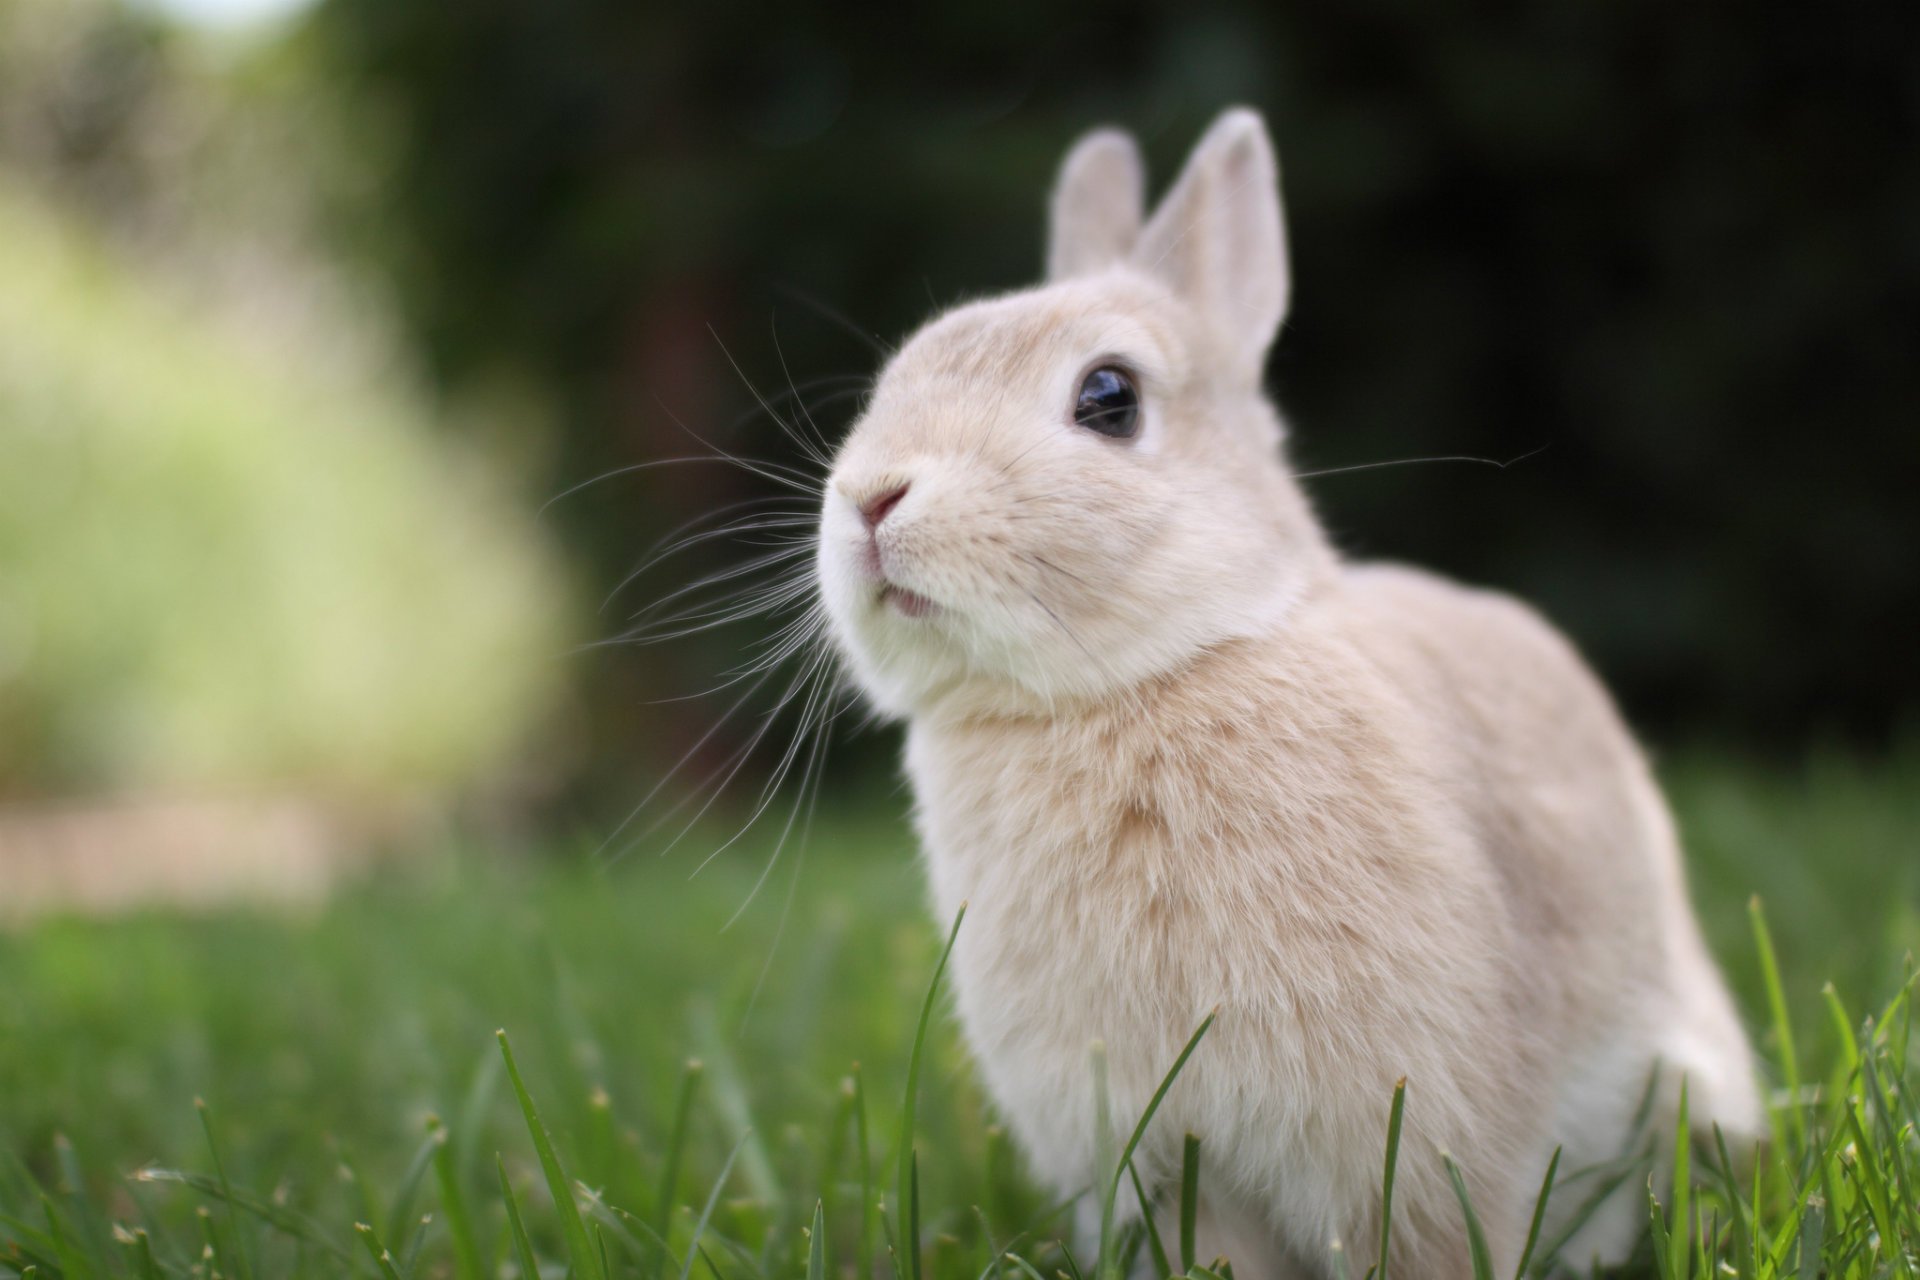 Cute Rabbit Wallpapers Rabbit Desktop Wallpapers 1080p